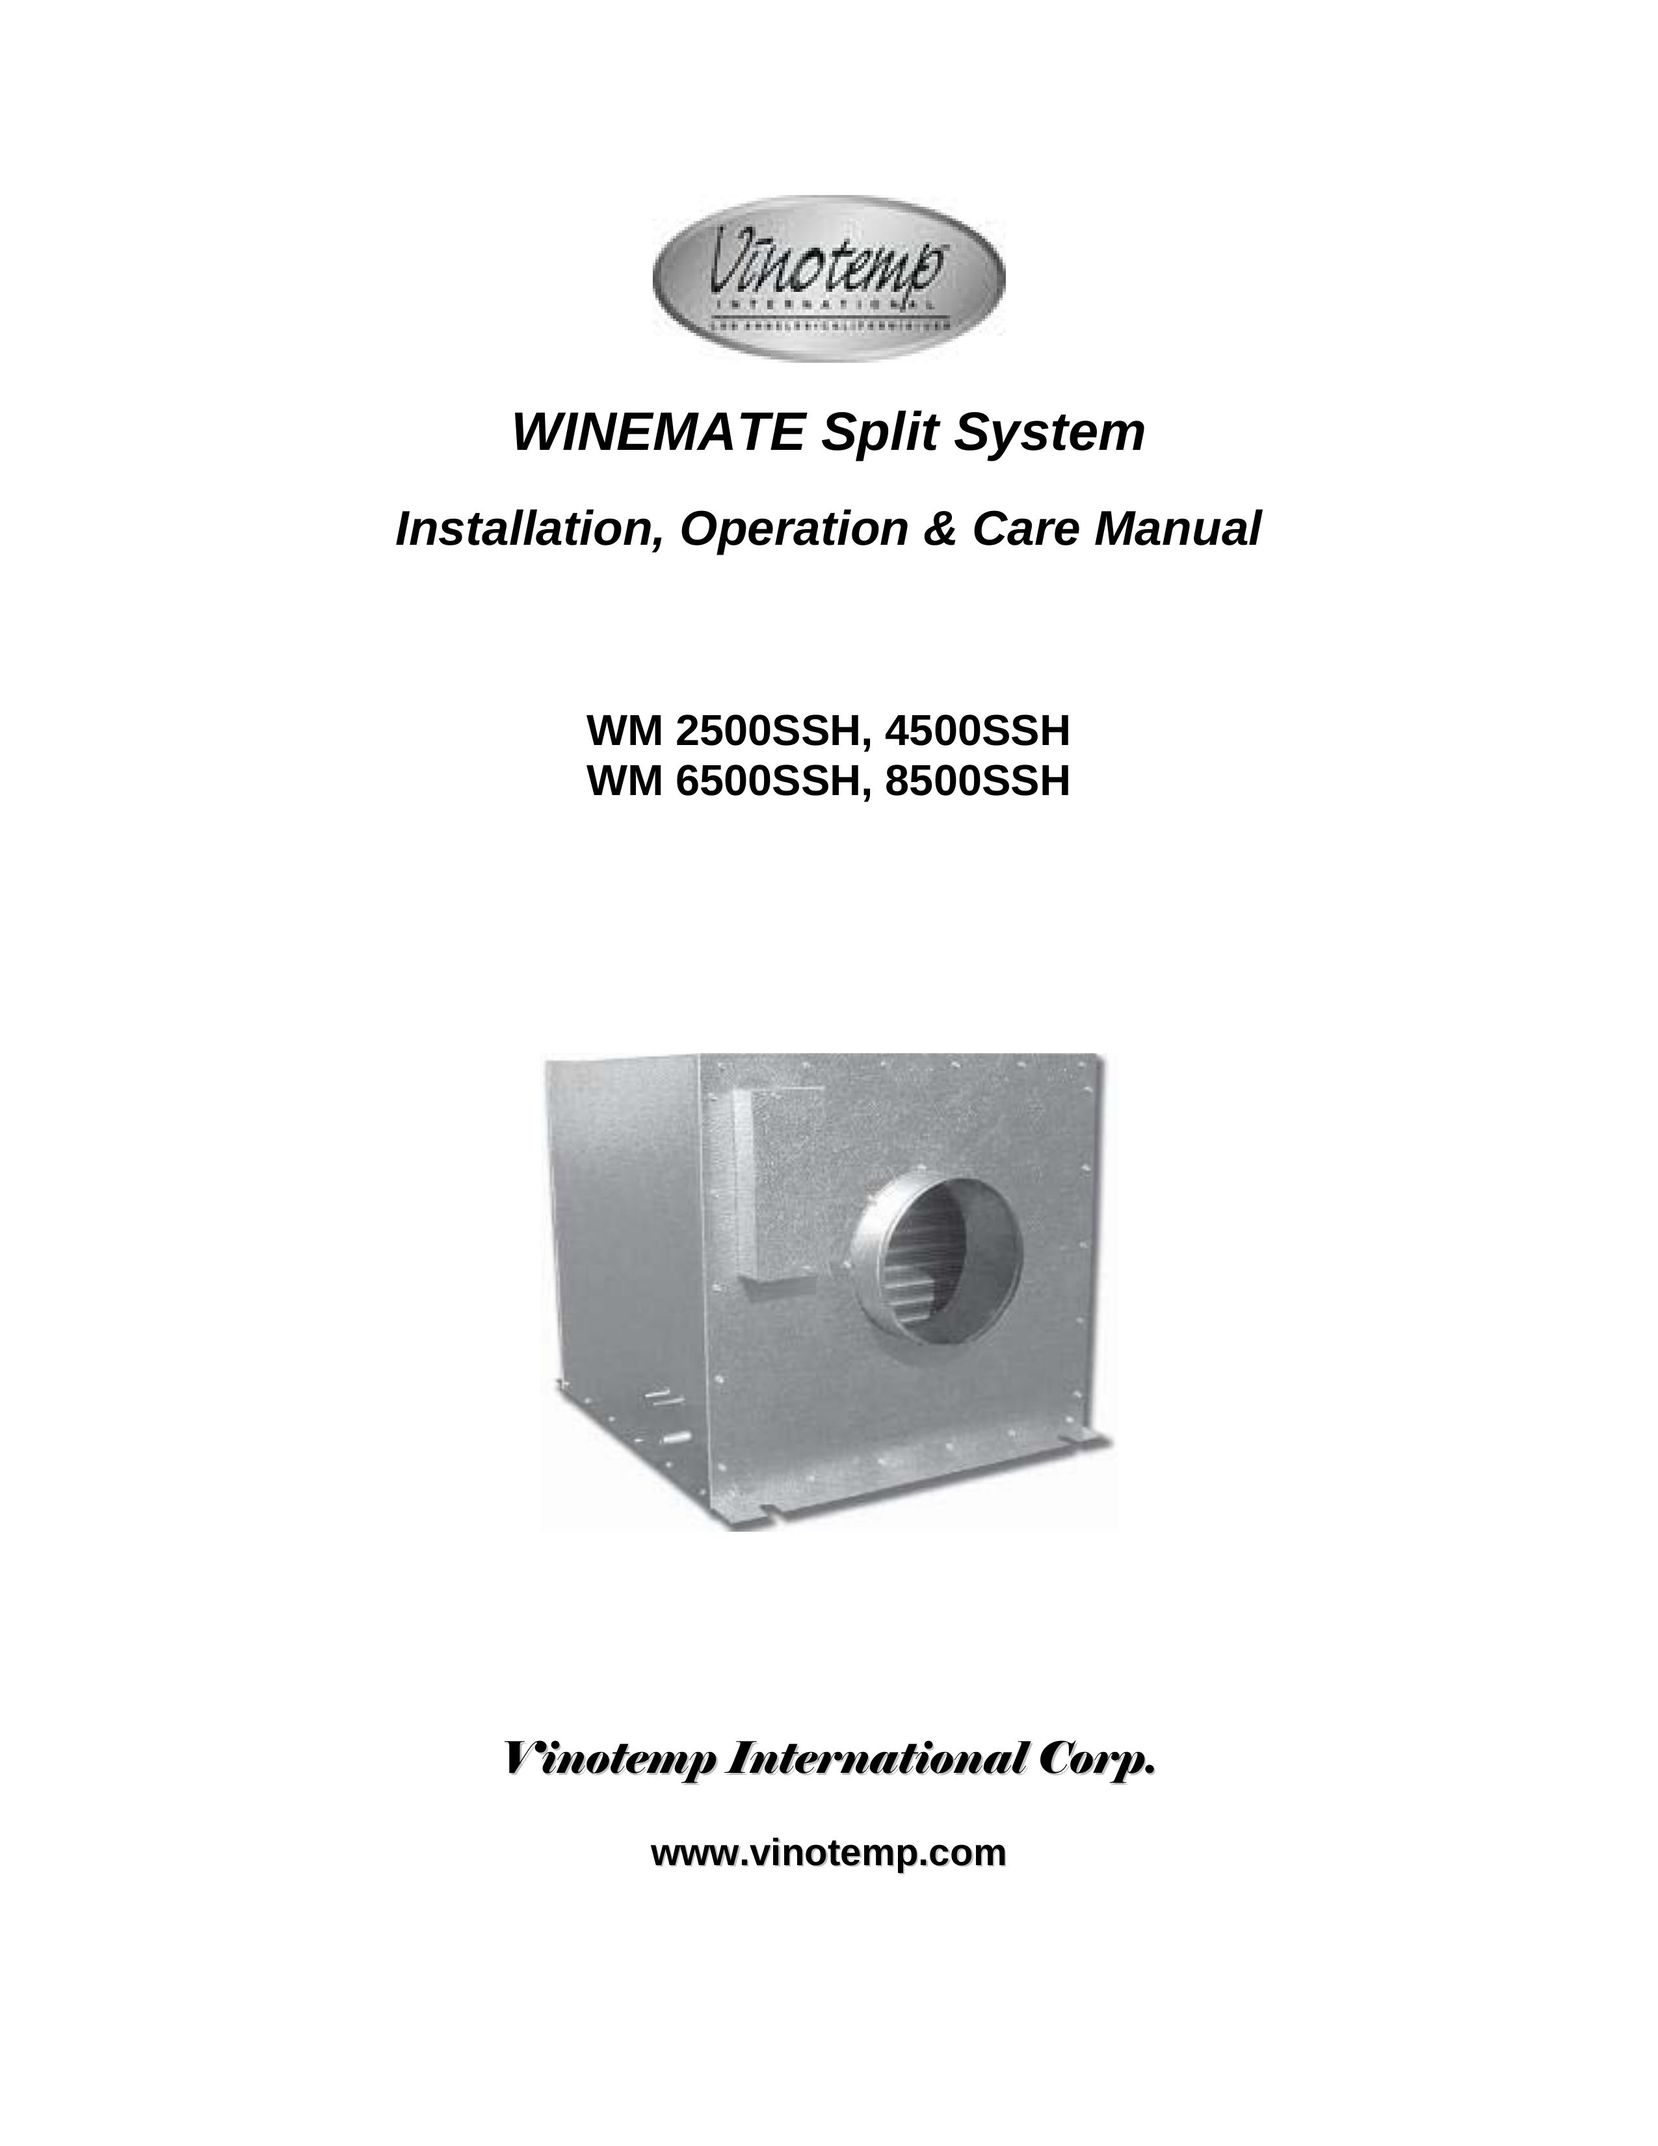 Vinotemp 4500SSH Air Conditioner User Manual